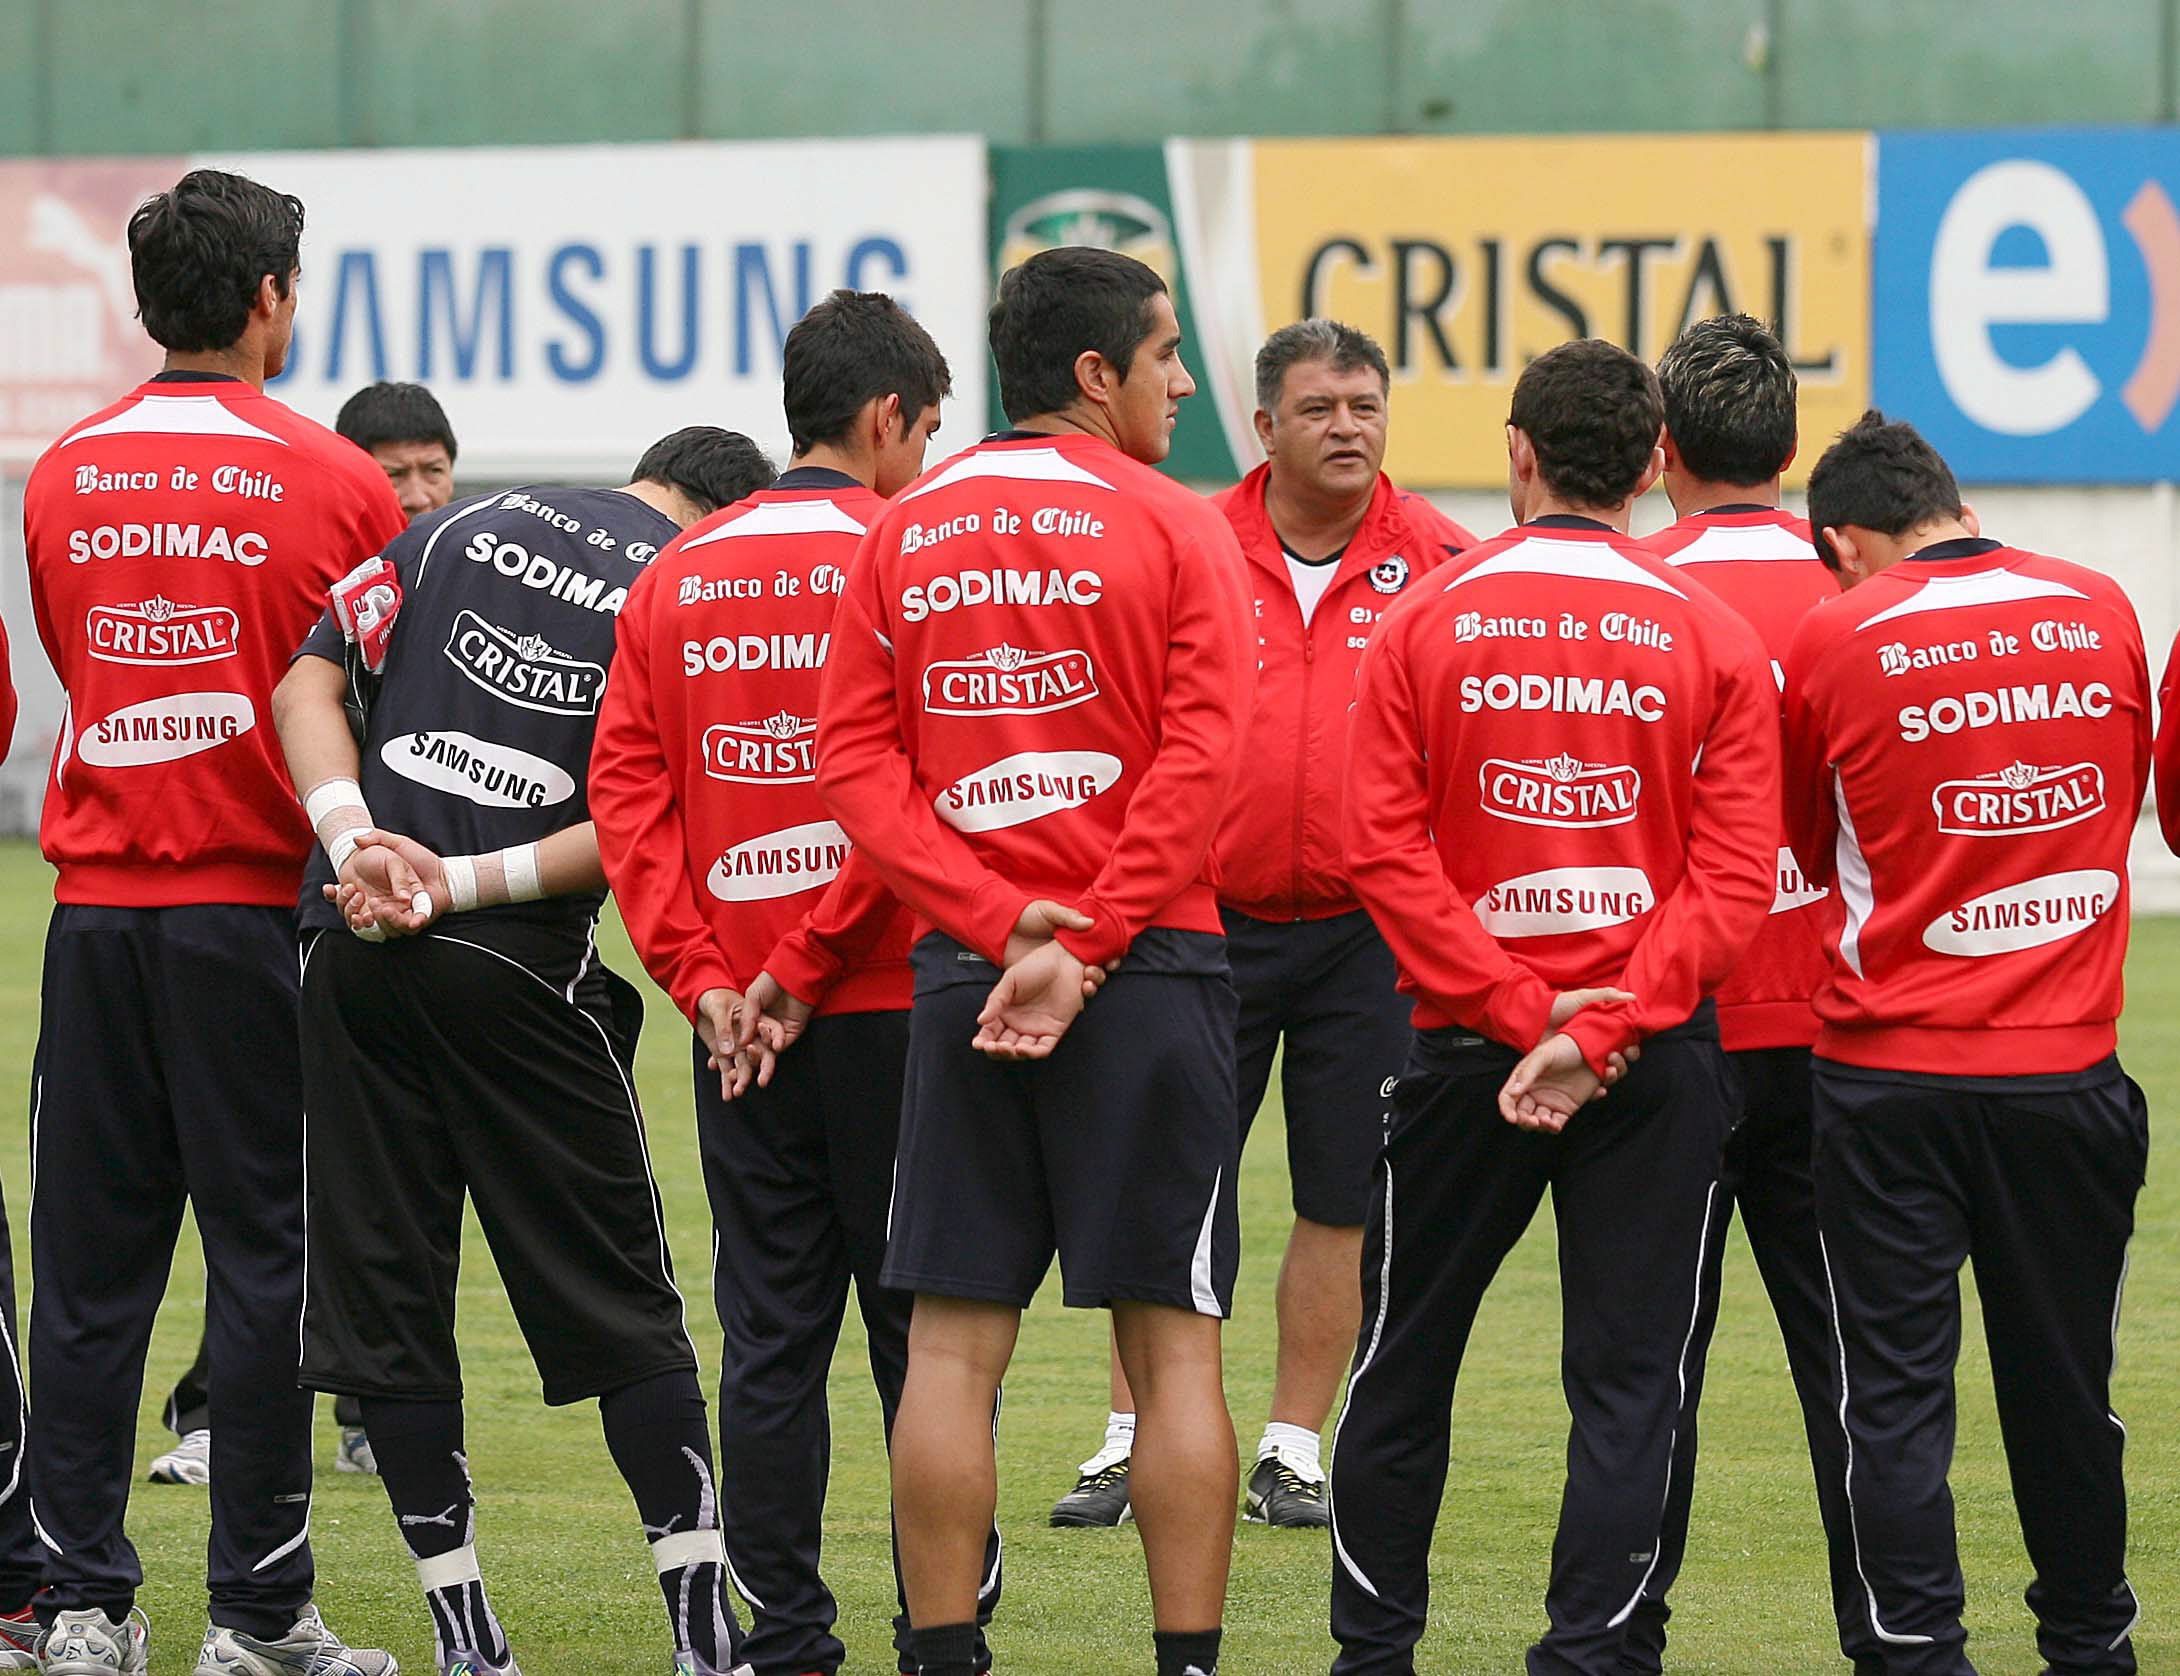 Петима футболисти на Чили отстранени от отбора